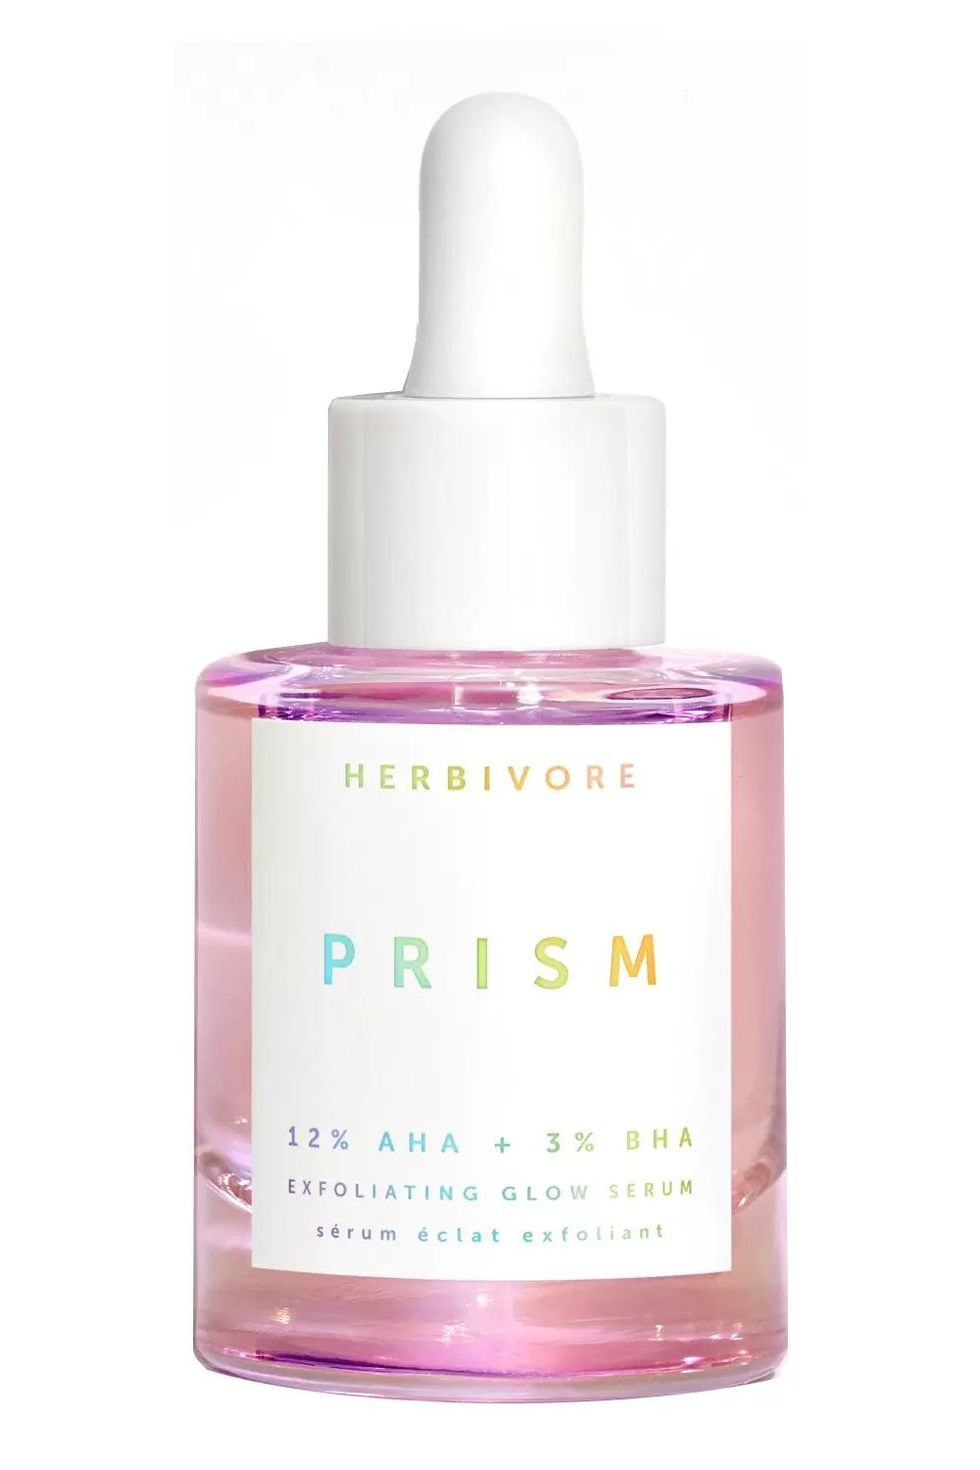 Herbivore Prism 12% AHA + 3% BHA Exfoliating Glow Serum